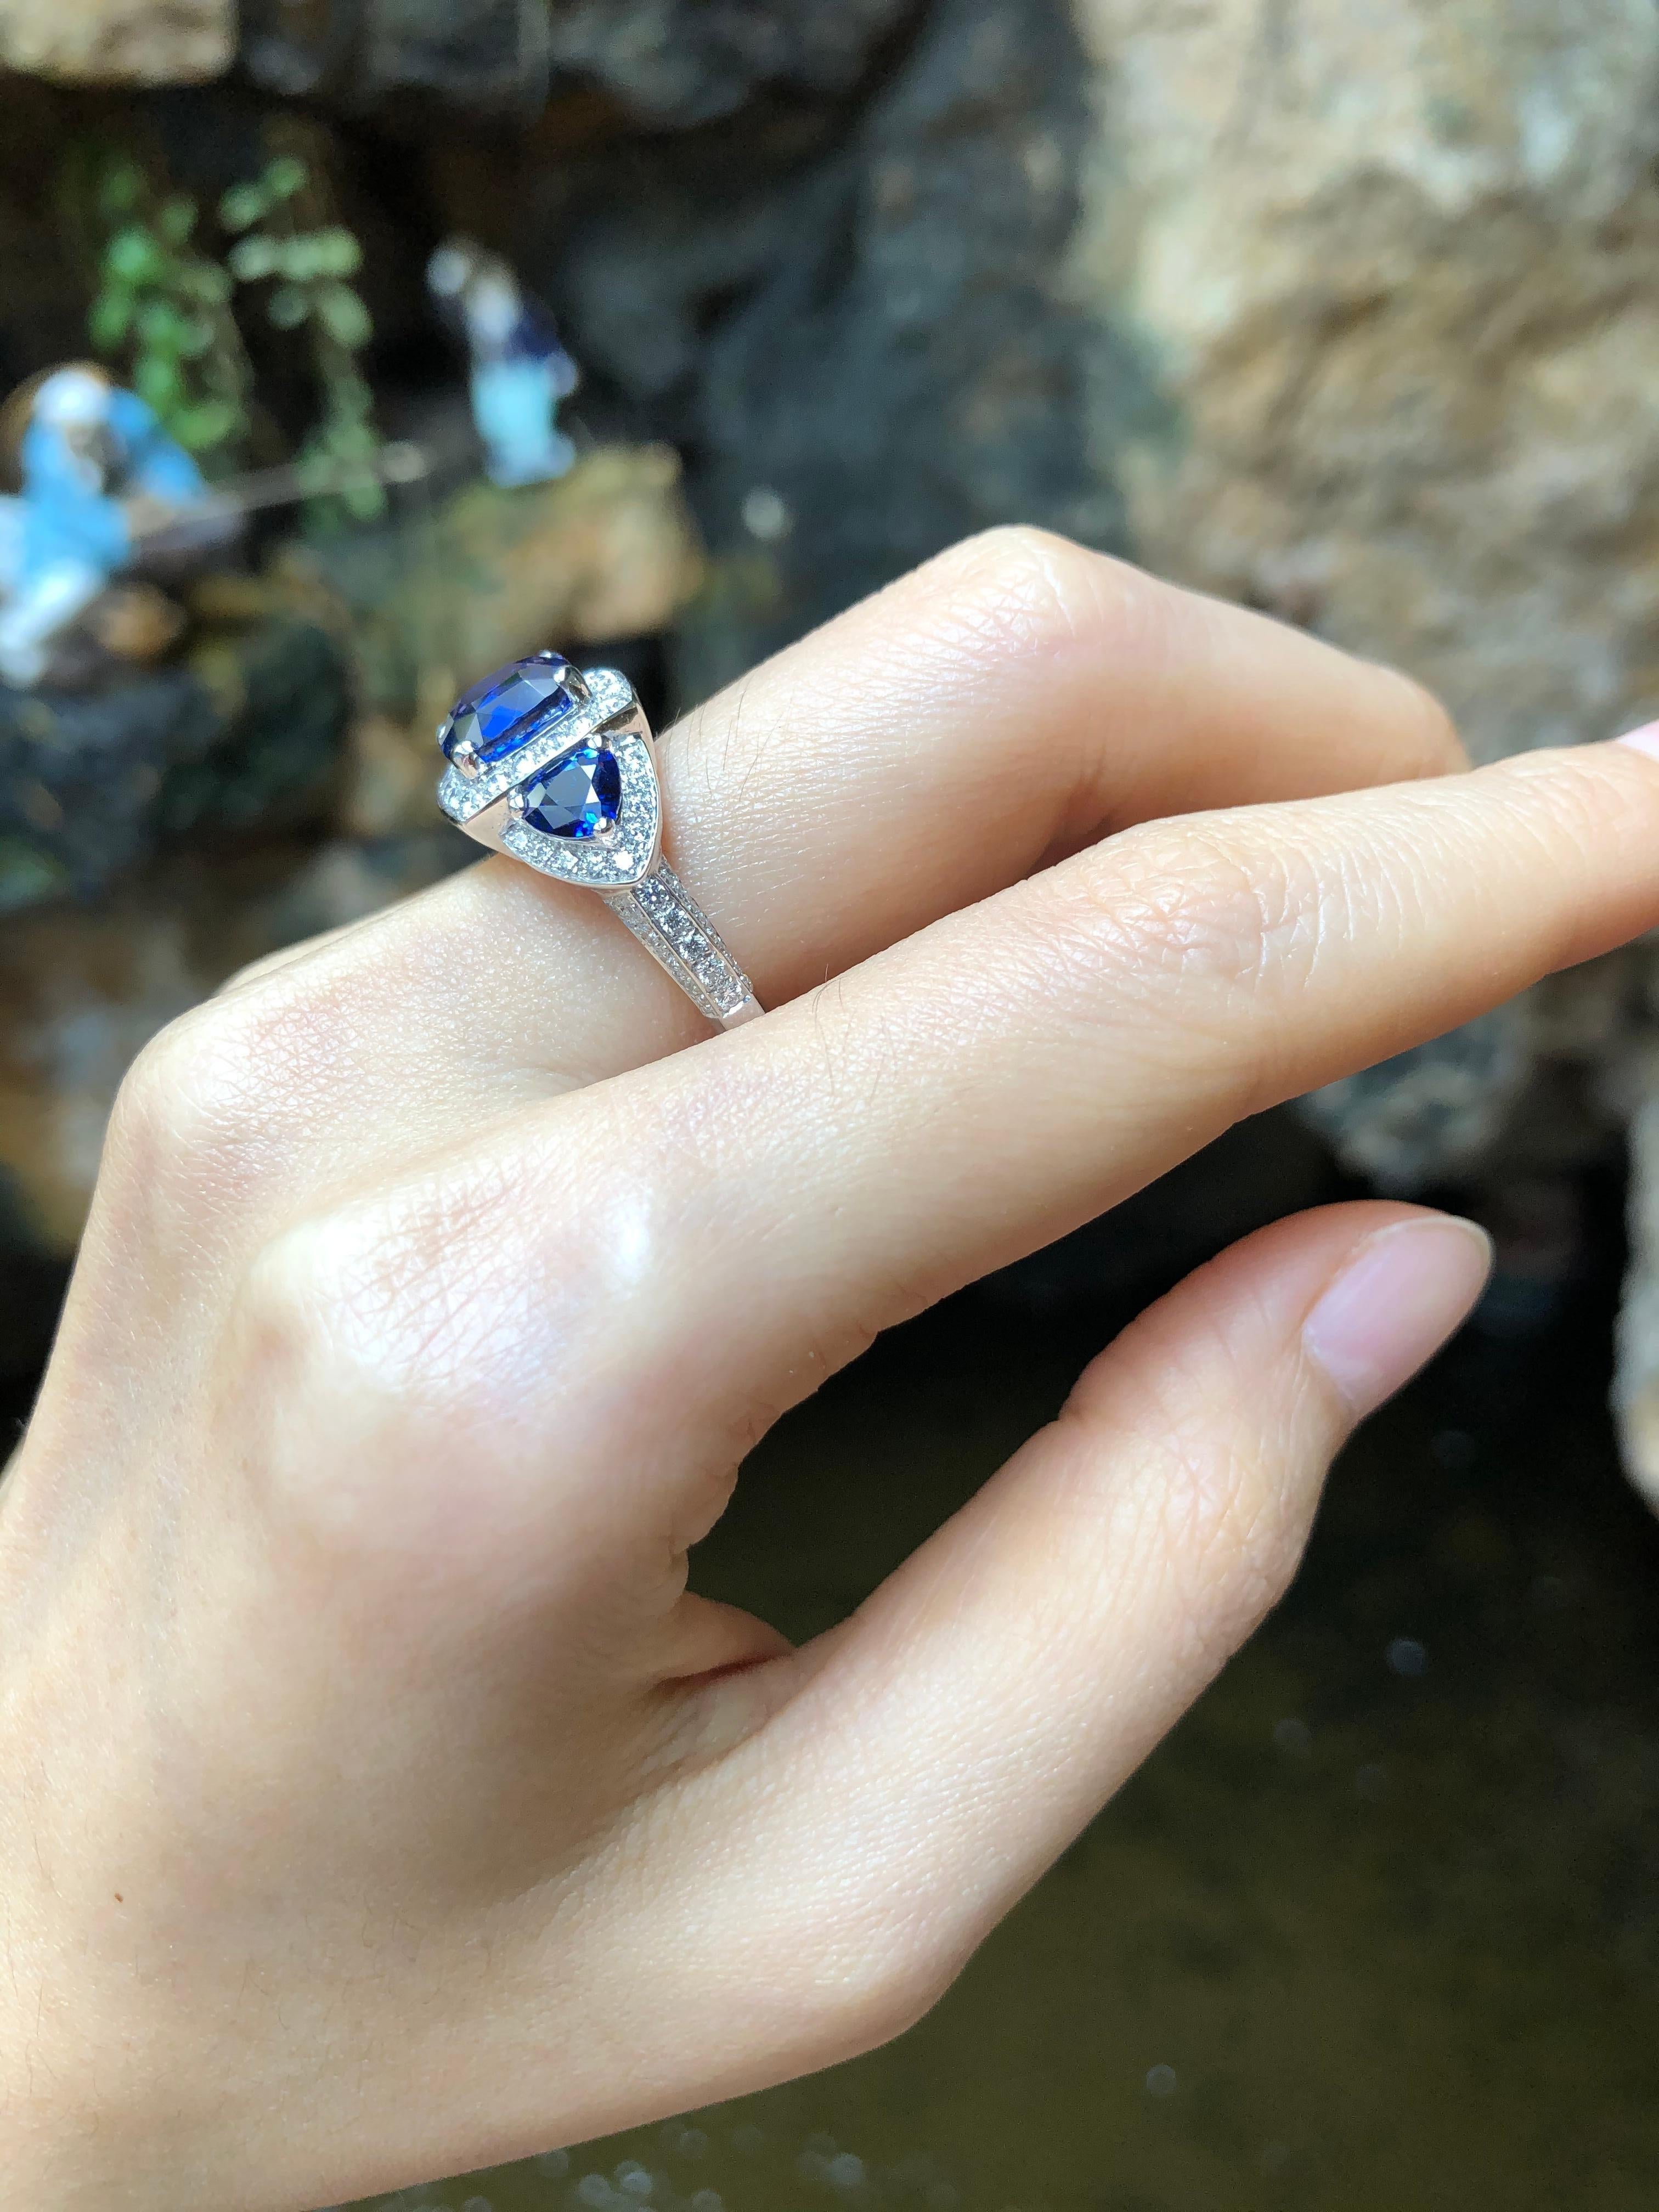 Saphir bleu 3,64 carats avec saphir bleu 1,40 carats et diamant 0,96 carat Bague en or blanc 18 carats

Largeur :  0.8 cm 
Longueur : 0.8 cm
Taille de l'anneau : 54
Poids total : 6,91 grammes

